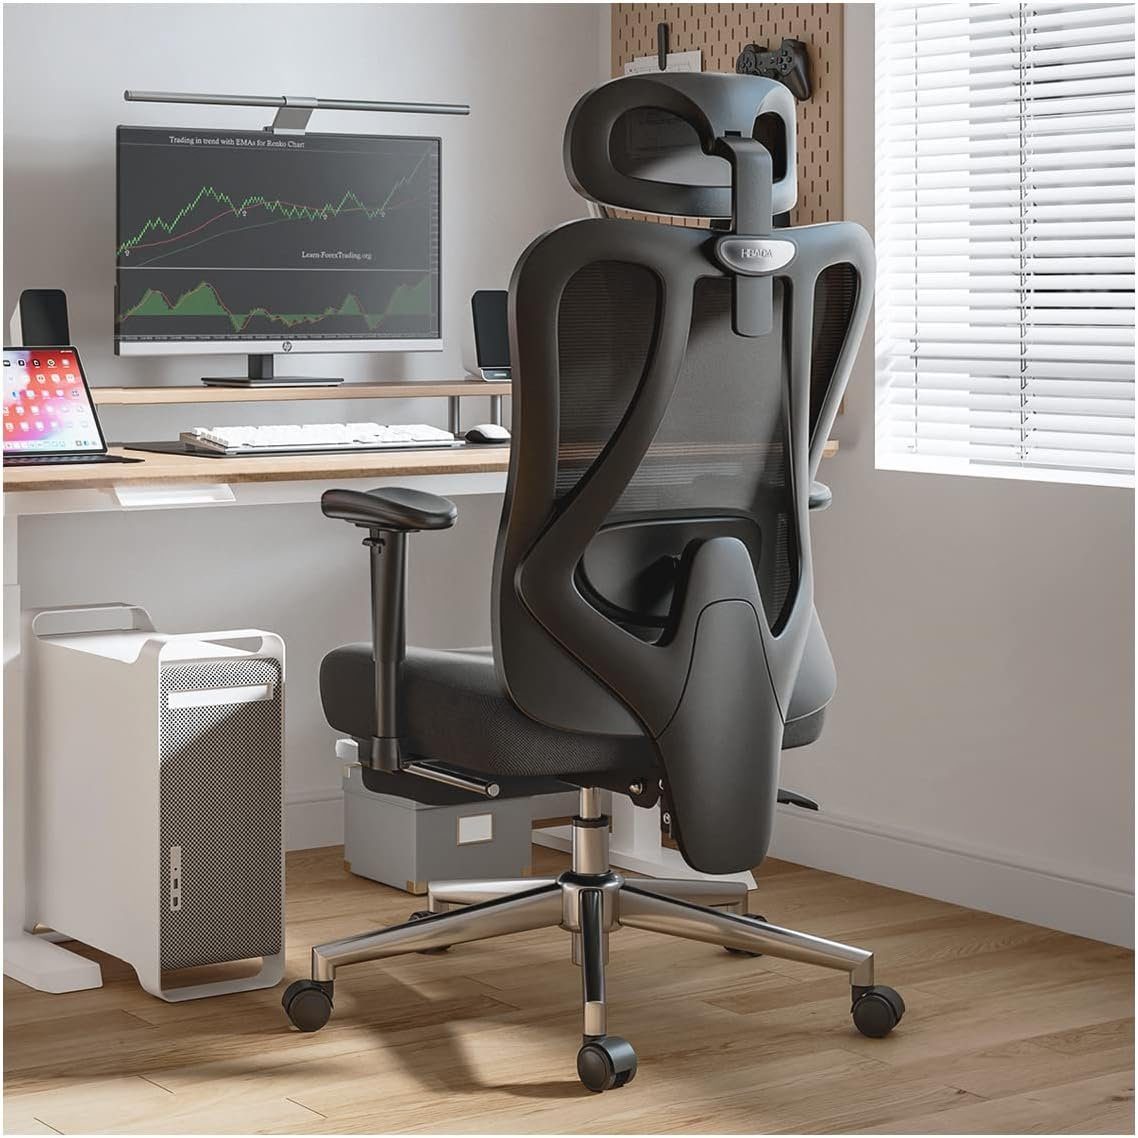 Hbada Bürostuhl (Bürostuhl ergonomisch: Schreibtischstuhl mit verstellbarem Sitz), E1Bürostuhl Ergonomisch Schreibtischstuhl mit Verstellbarer Kopfstütze